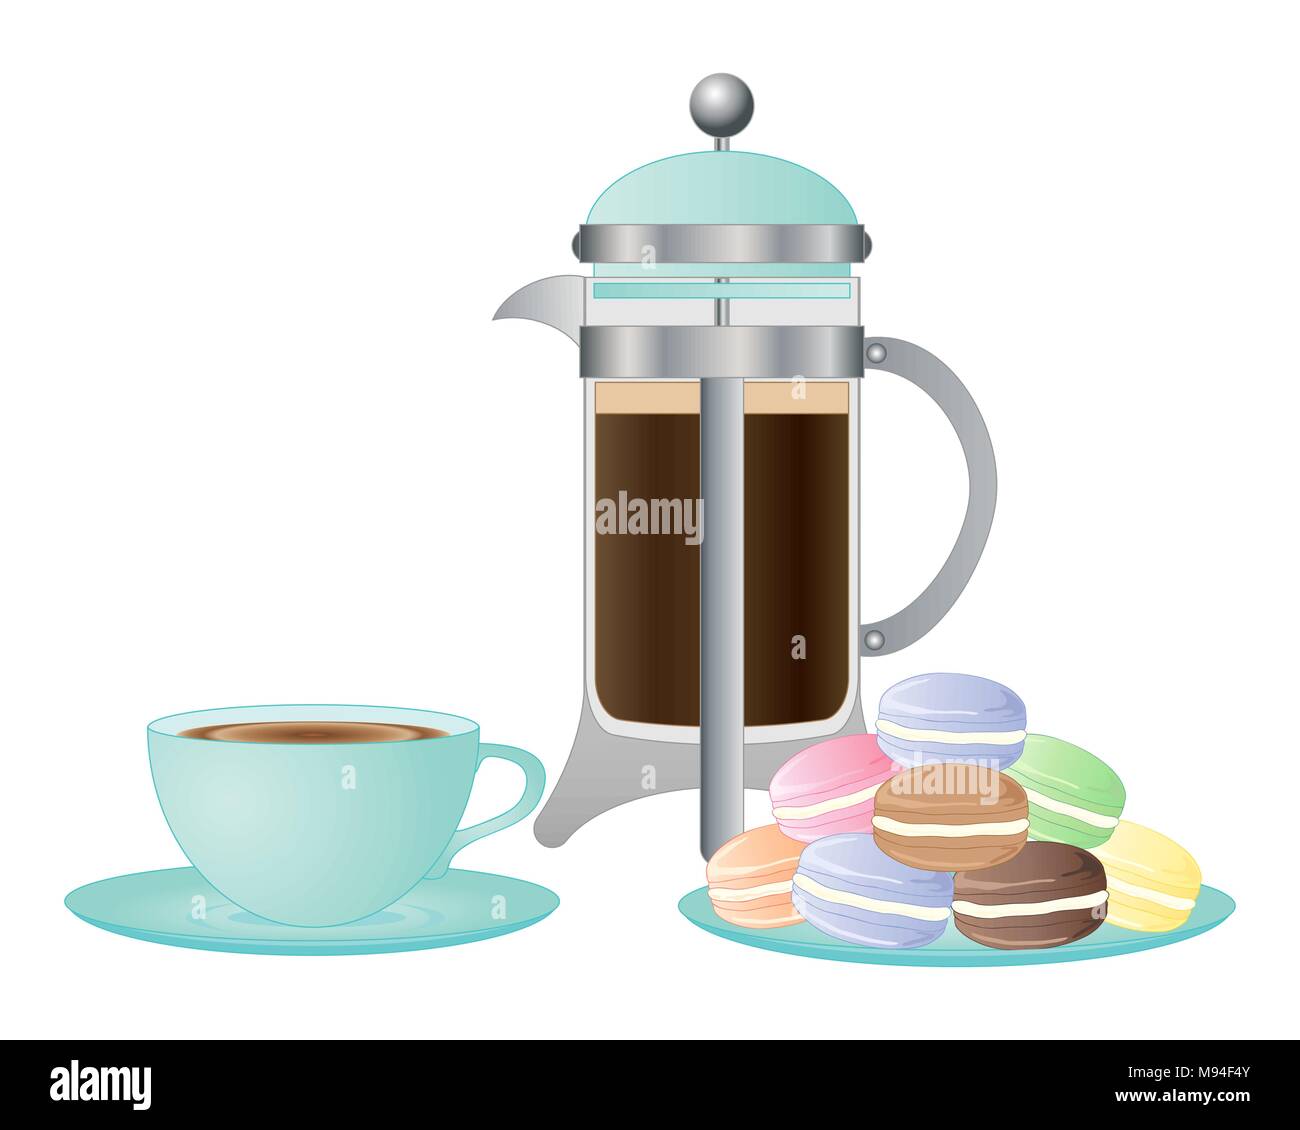 Une illustration d'un élégant café tasse et soucoupe et une assiette de fantaisies de macarons sur fond blanc Illustration de Vecteur